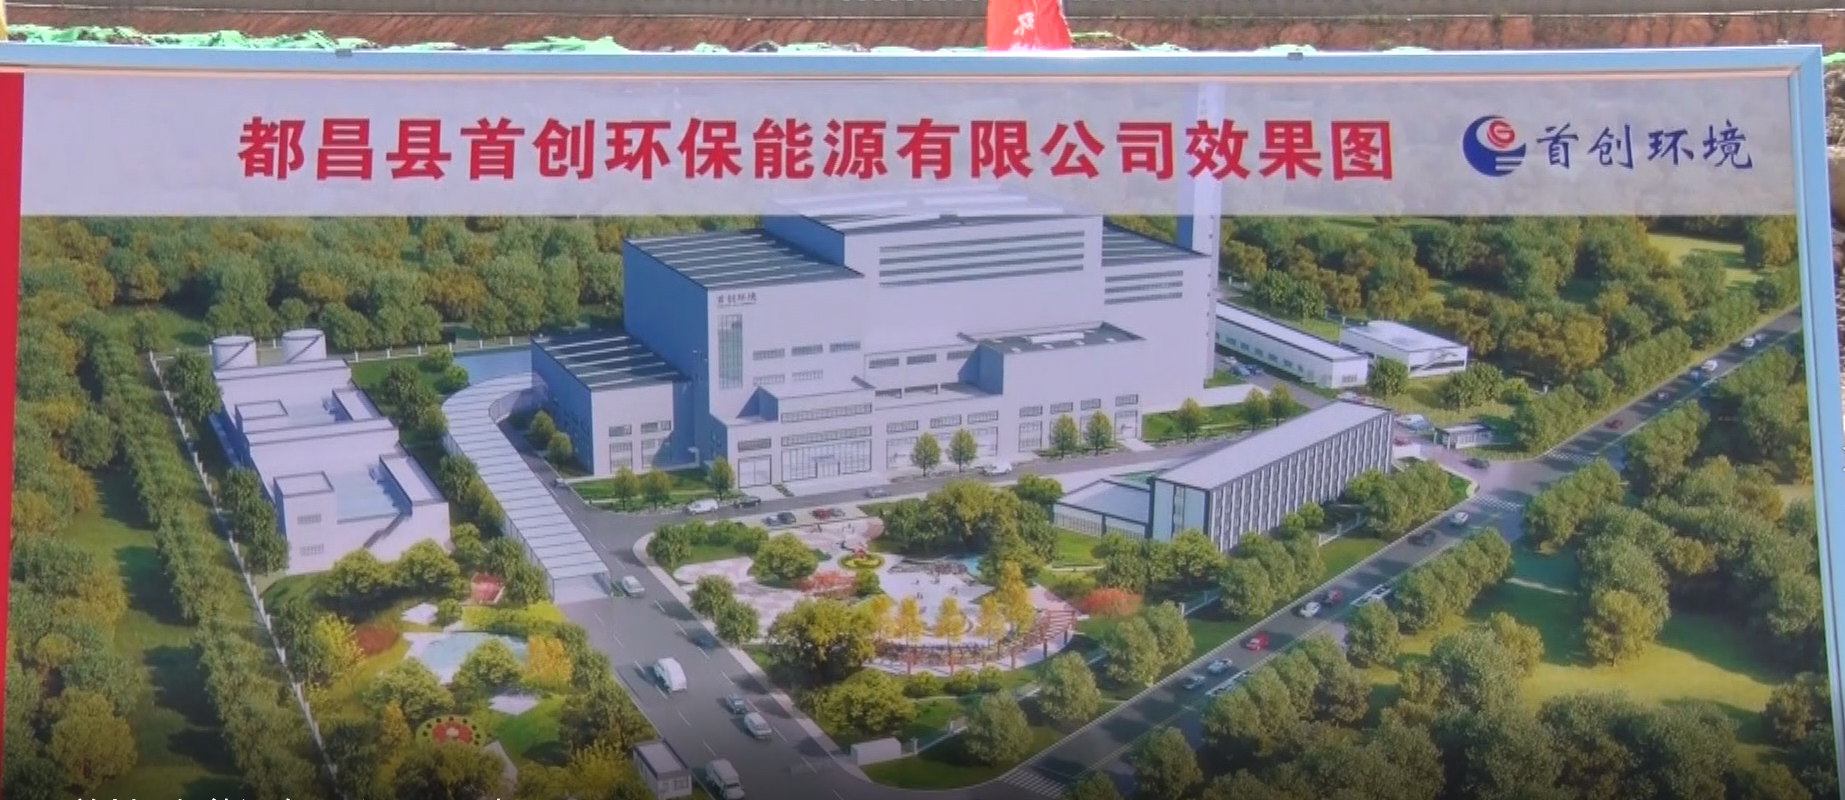 都昌县首创环保能源有限公司开工建设